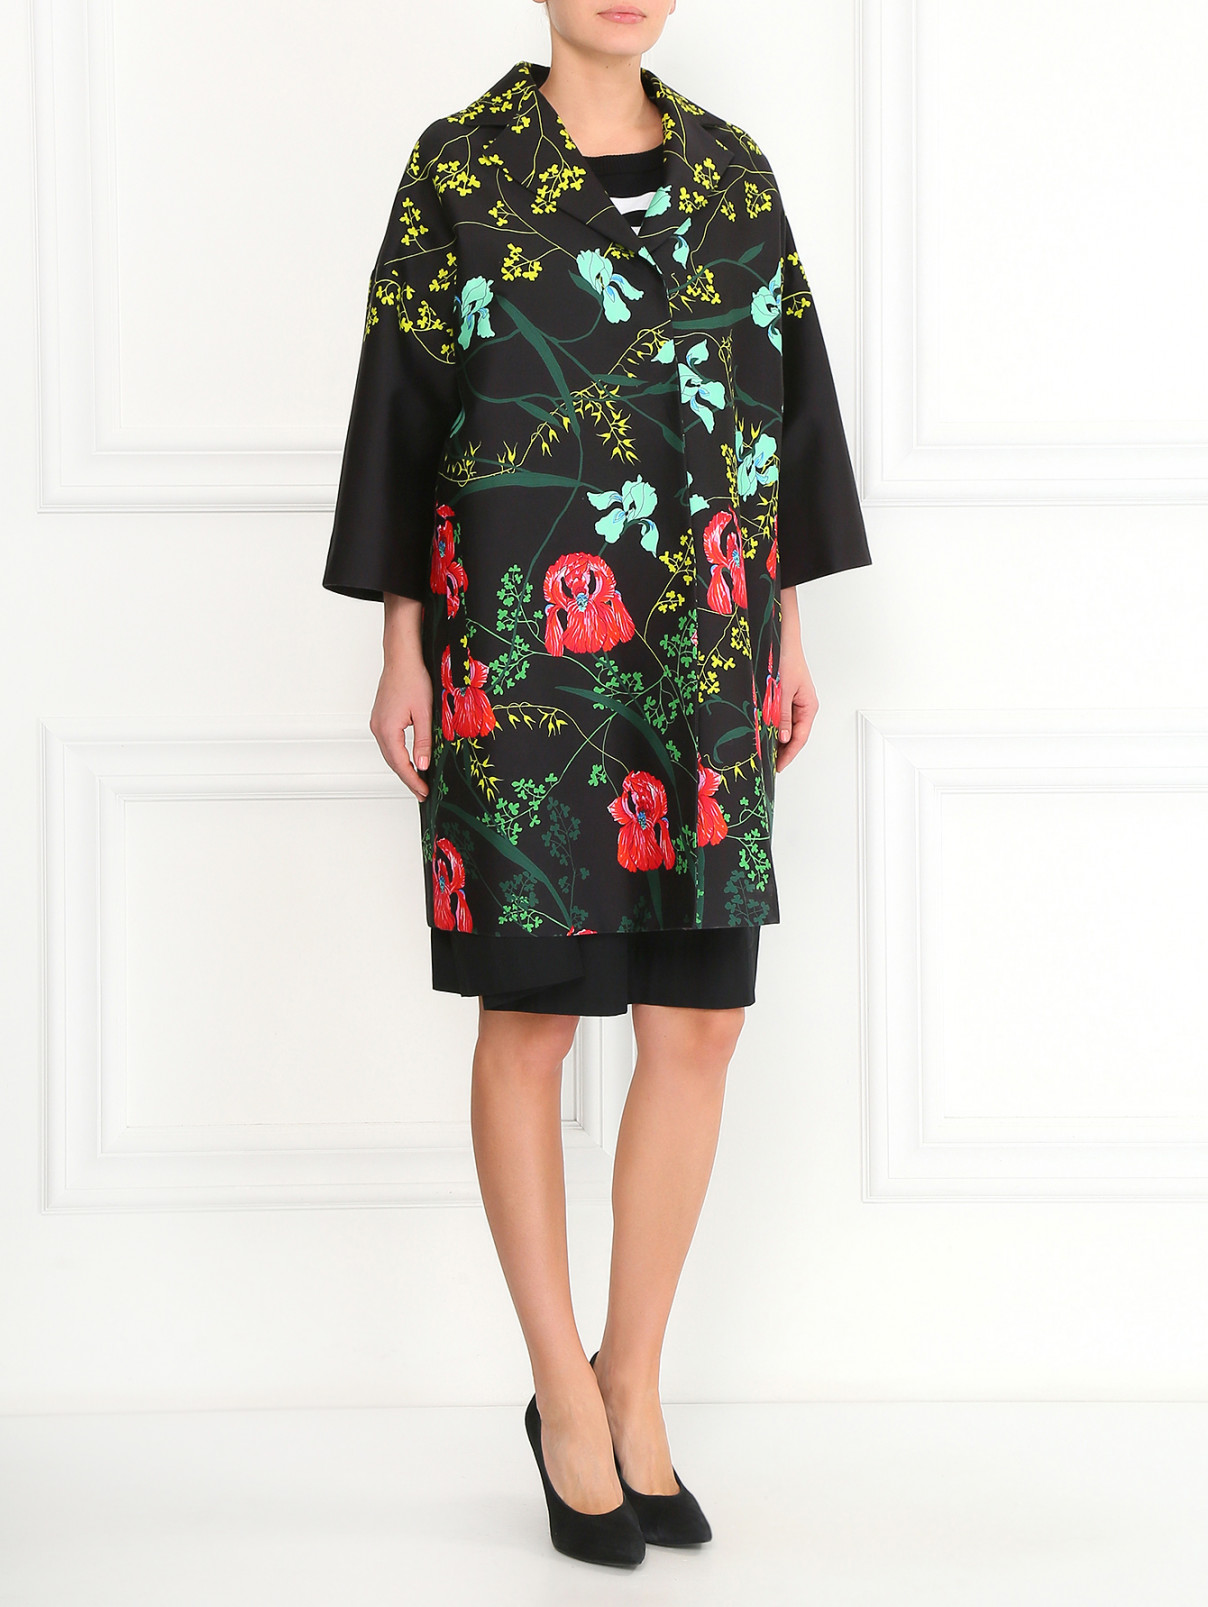 Пальто из хлопка с цветочным узором Isola Marras  –  Модель Общий вид  – Цвет:  Черный